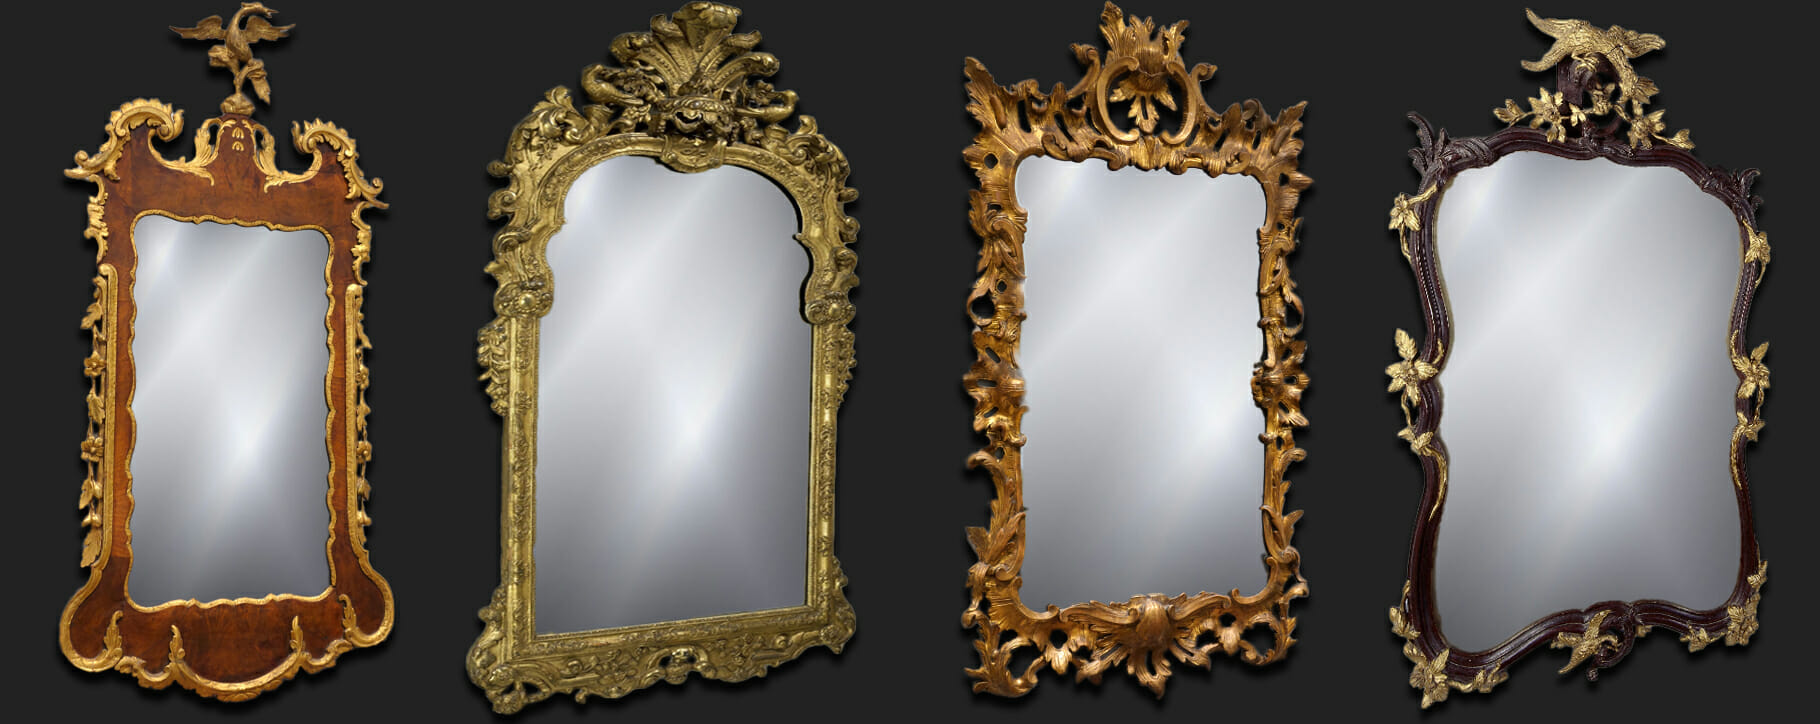 Mirror examples